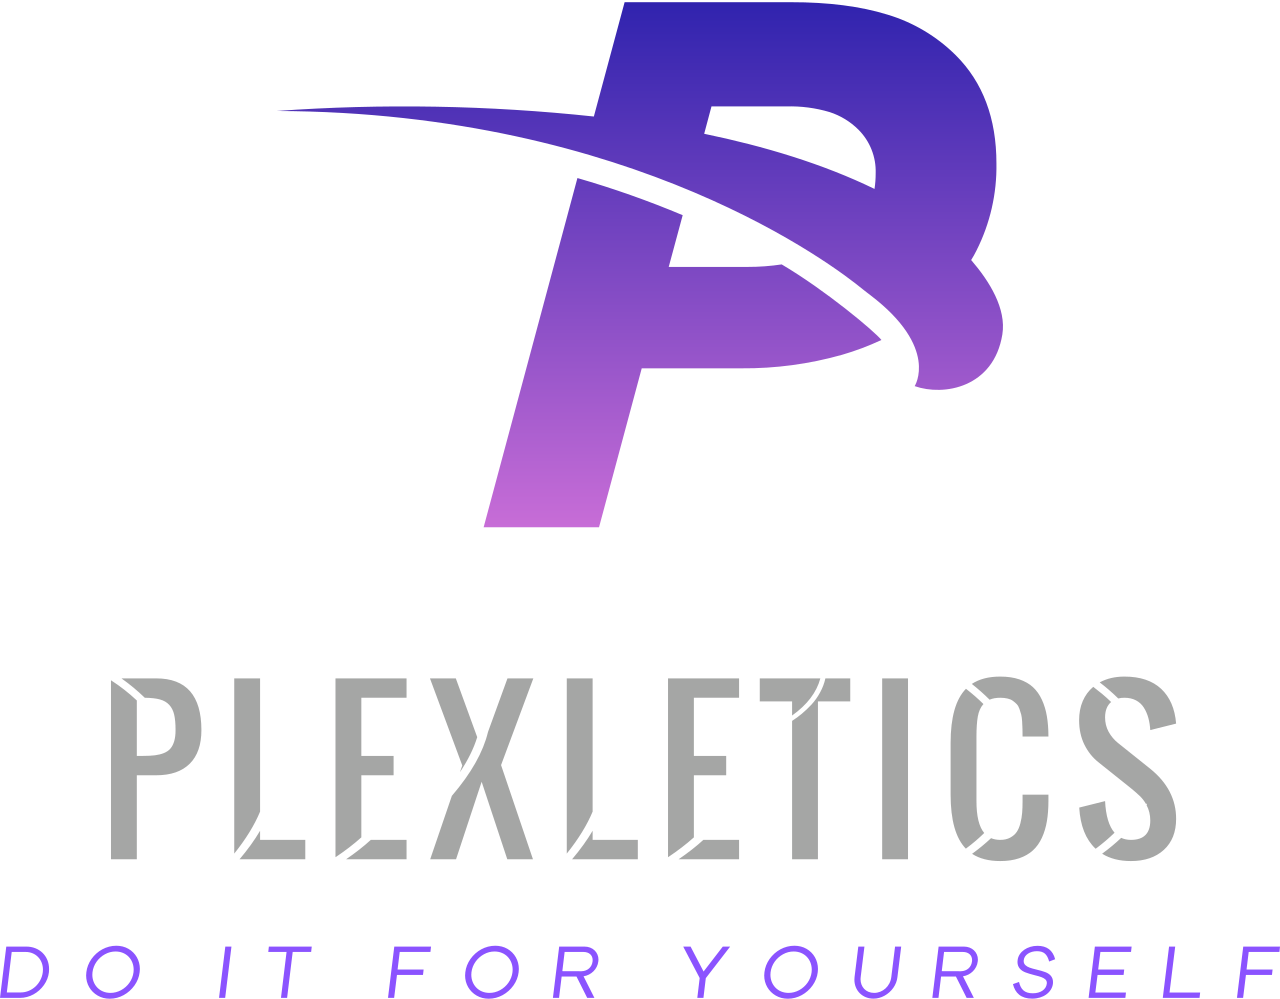 Plexletics's logo